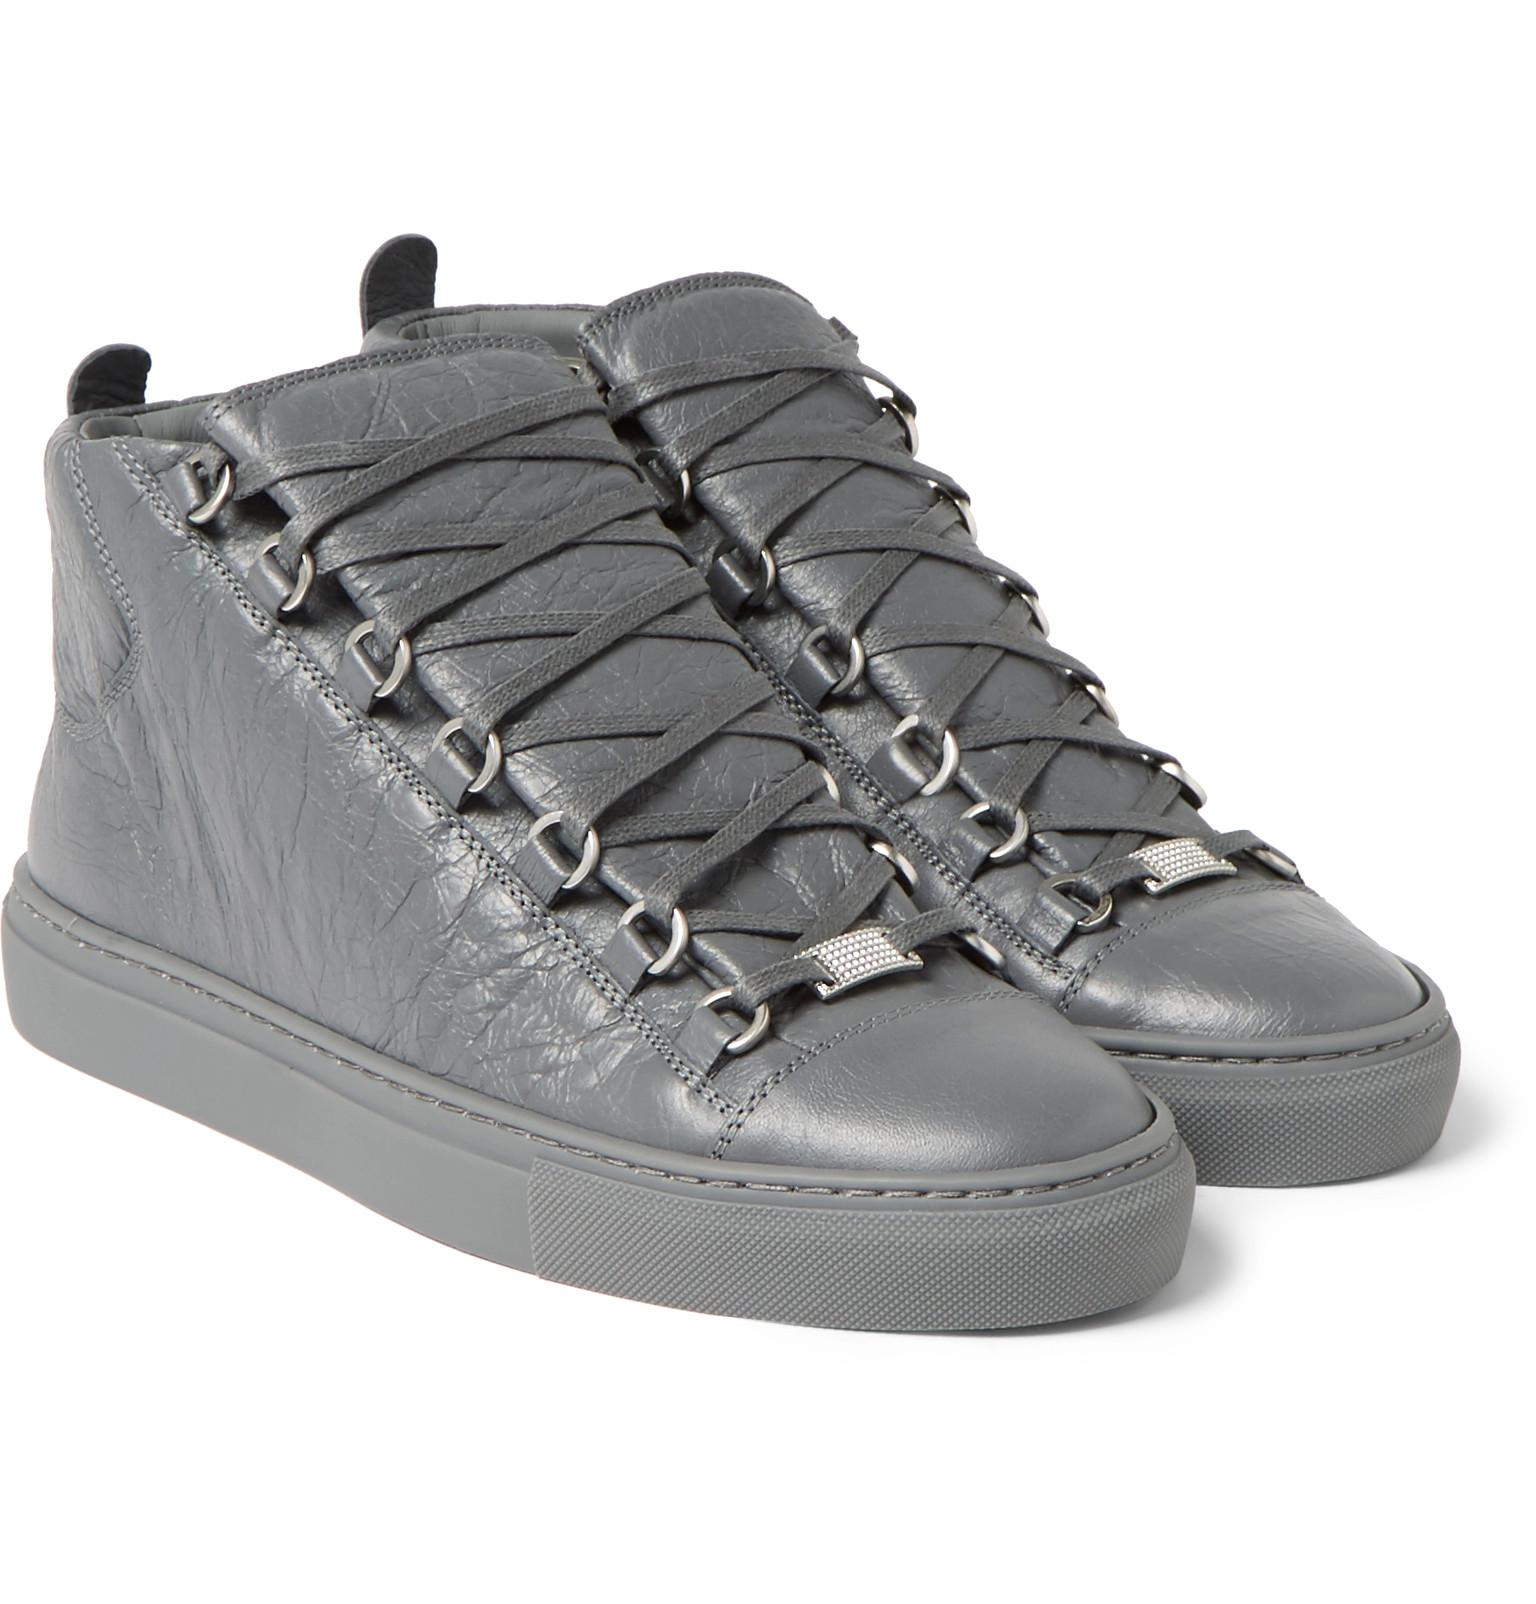 Balenciaga Sneakers Boots : Cheap 2019 New Balenciaga Casual Fashion ...